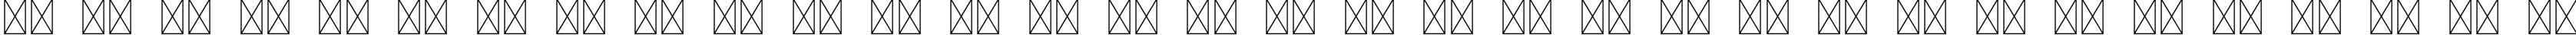 Пример написания русского алфавита шрифтом Azonix